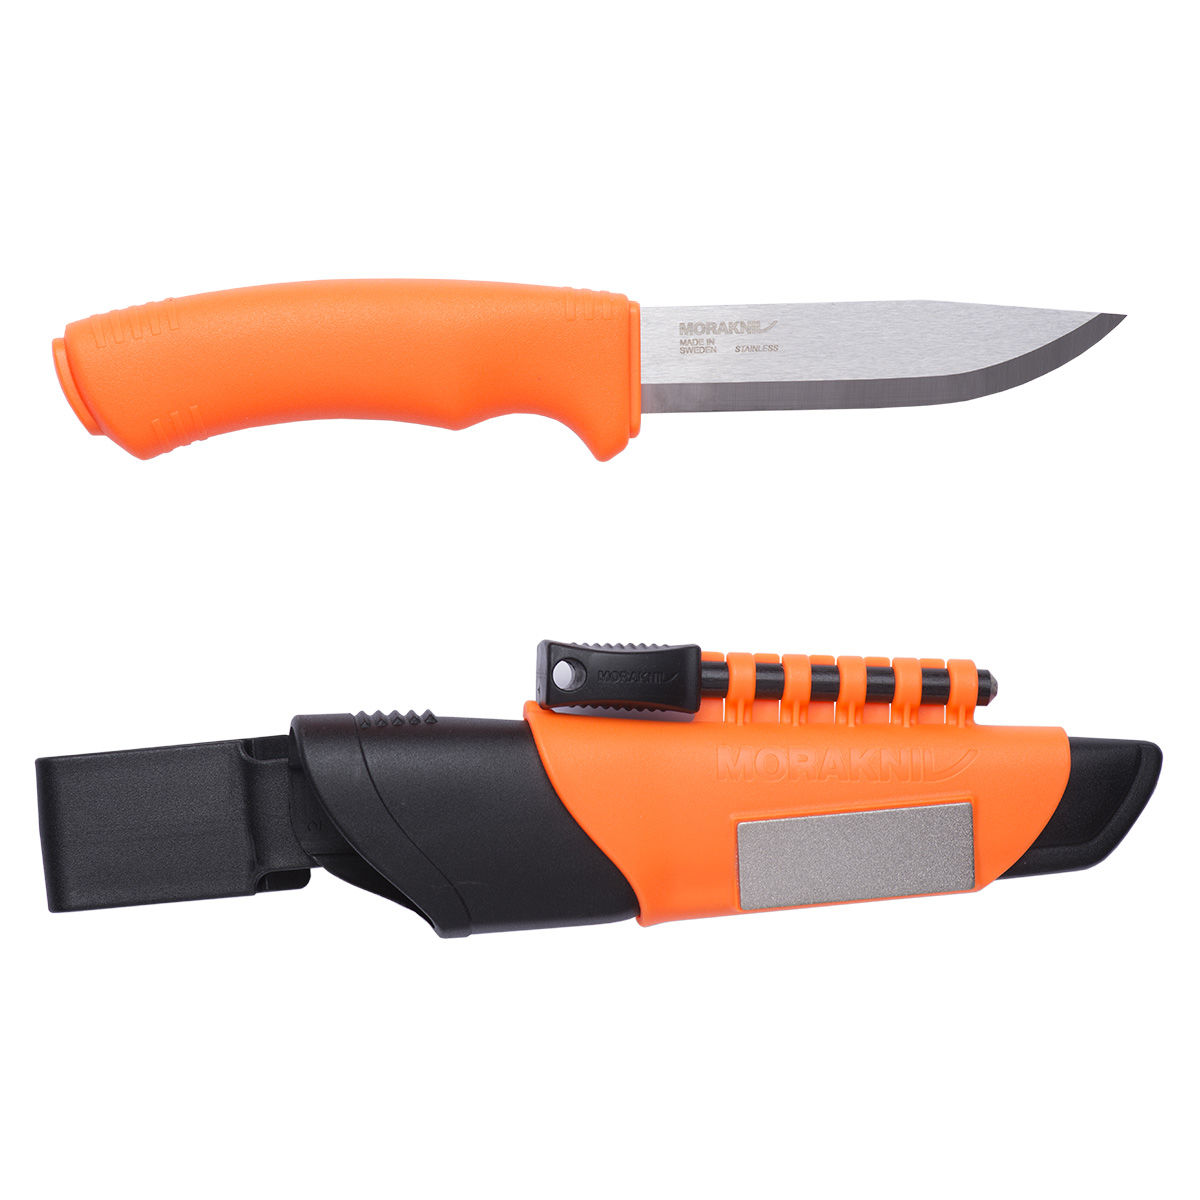 Couteau Mora bushcraft survival orange: pierre à feu, aiguiseur